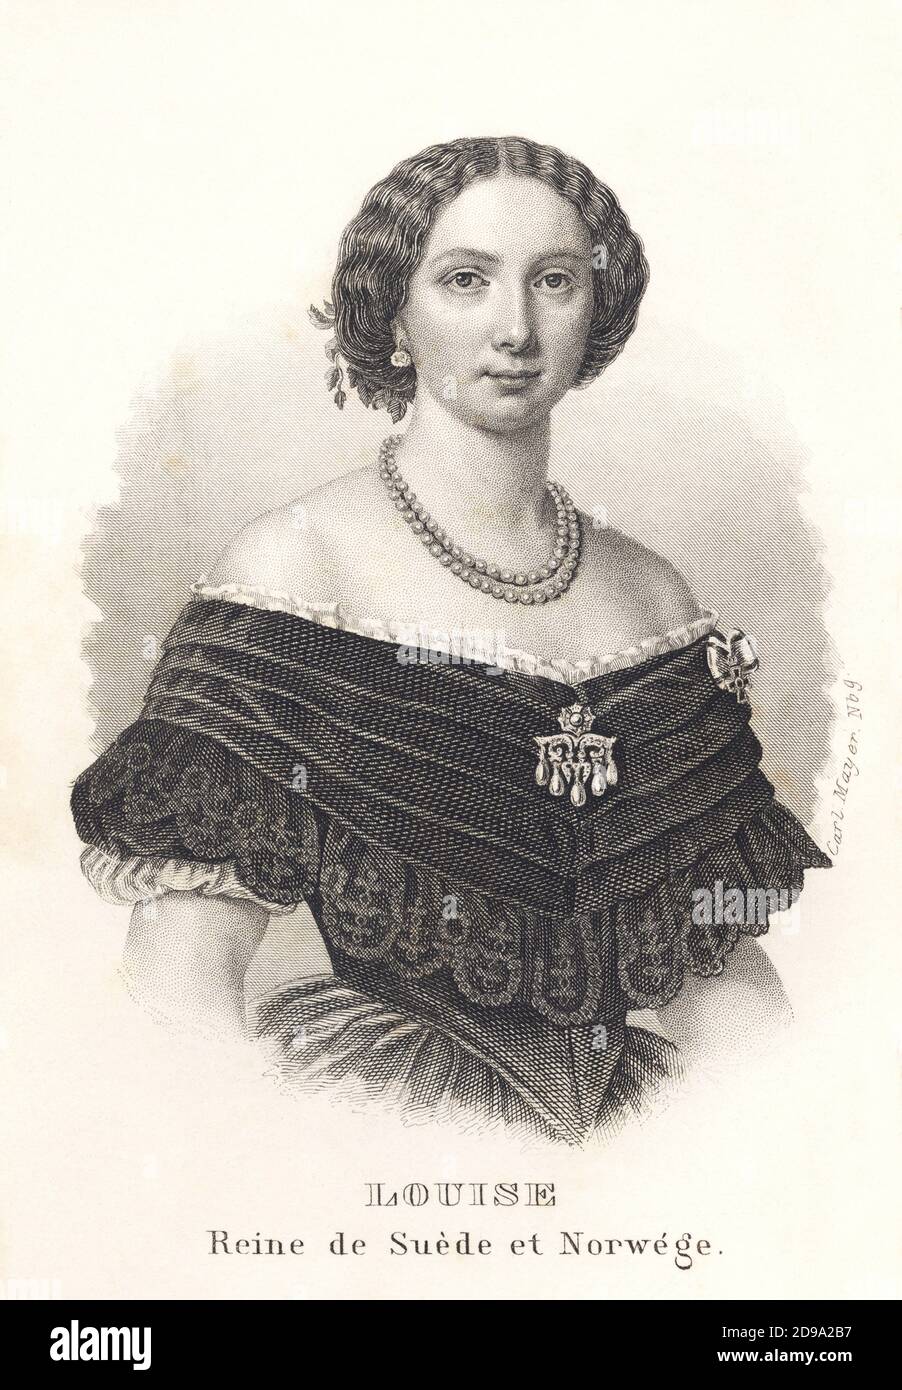 1861 : la Regina di Svezia e la Norvegia LOUISE (Luisa dei Paesi Bassi, 1828-1871), moglie del re Carlo XV di Svezia e IV di Norvegia. Ritratto inciso da ALMANACH DE GOTHA , 1861. Suo padre era il principe Frederik dei Paesi Bassi, il secondo figlio del re Willem i dei Paesi Bassi e Wilhelmina di Prussia. Sua madre era la principessa Louise dei Paesi Bassi (nata principessa Louise di Prussia), l'ottavo figlio del re Friederich Wilhelm III di Prussia e Luise di Mecklenburg-Strelitz . La principessa Louise sposò nel 19 giugno 1850 il principe ereditario Carl di Svezia e la Norvegia, figlio del re Foto Stock